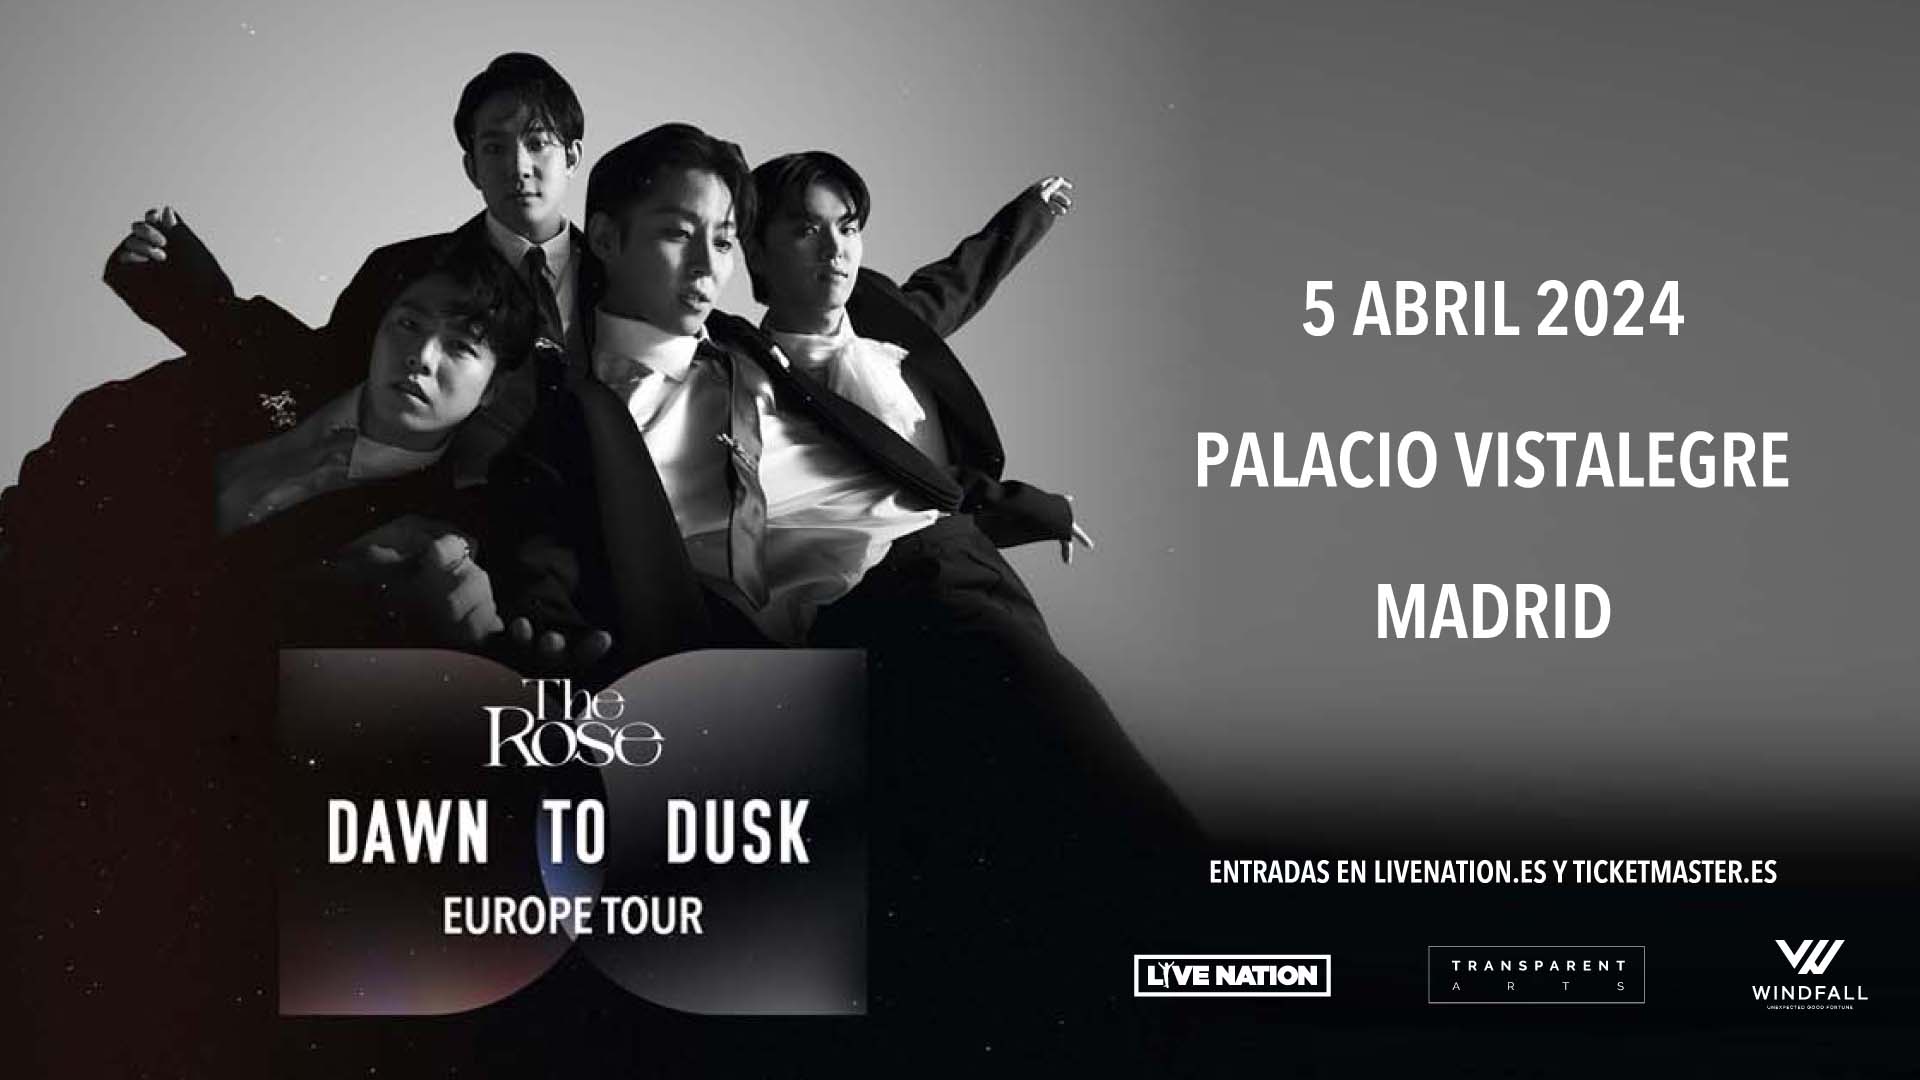 ¡No te pierdas el concierto de The Rose en Madrid! 